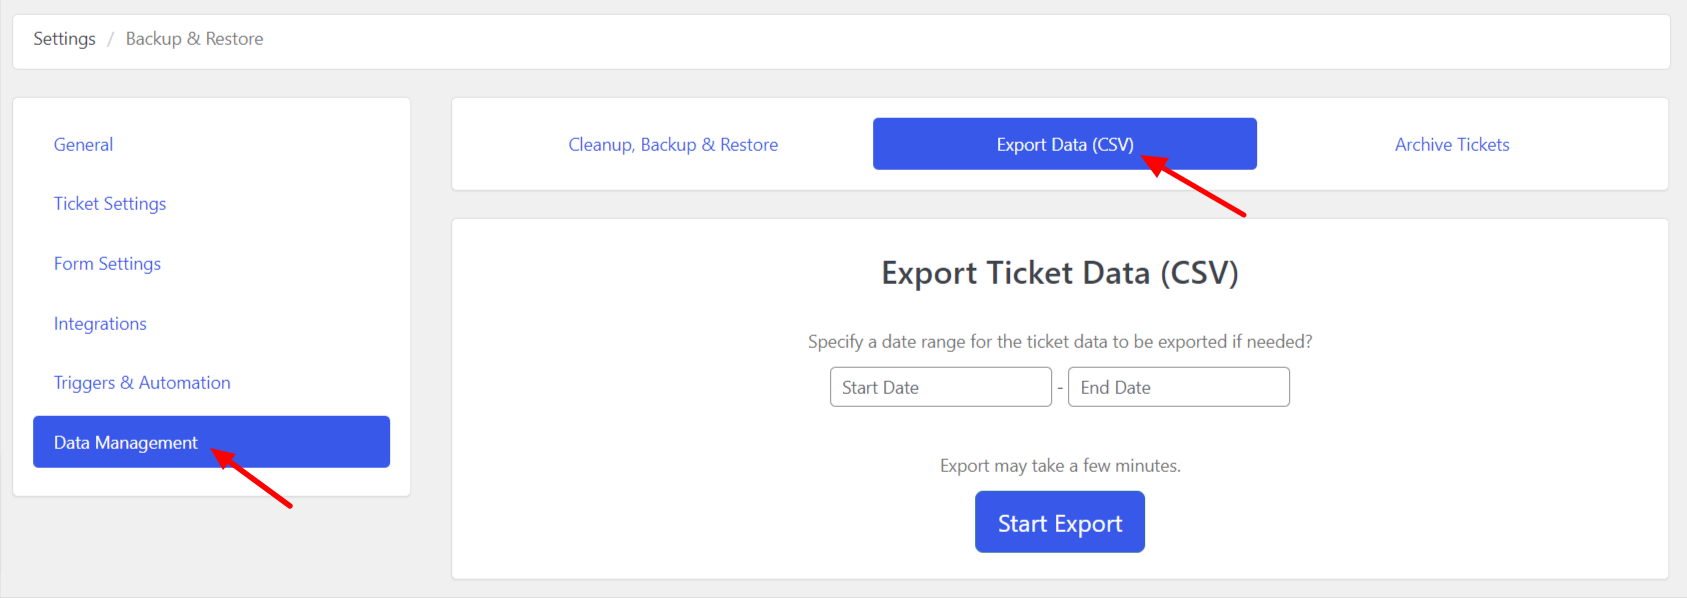 Export Data (CSV)